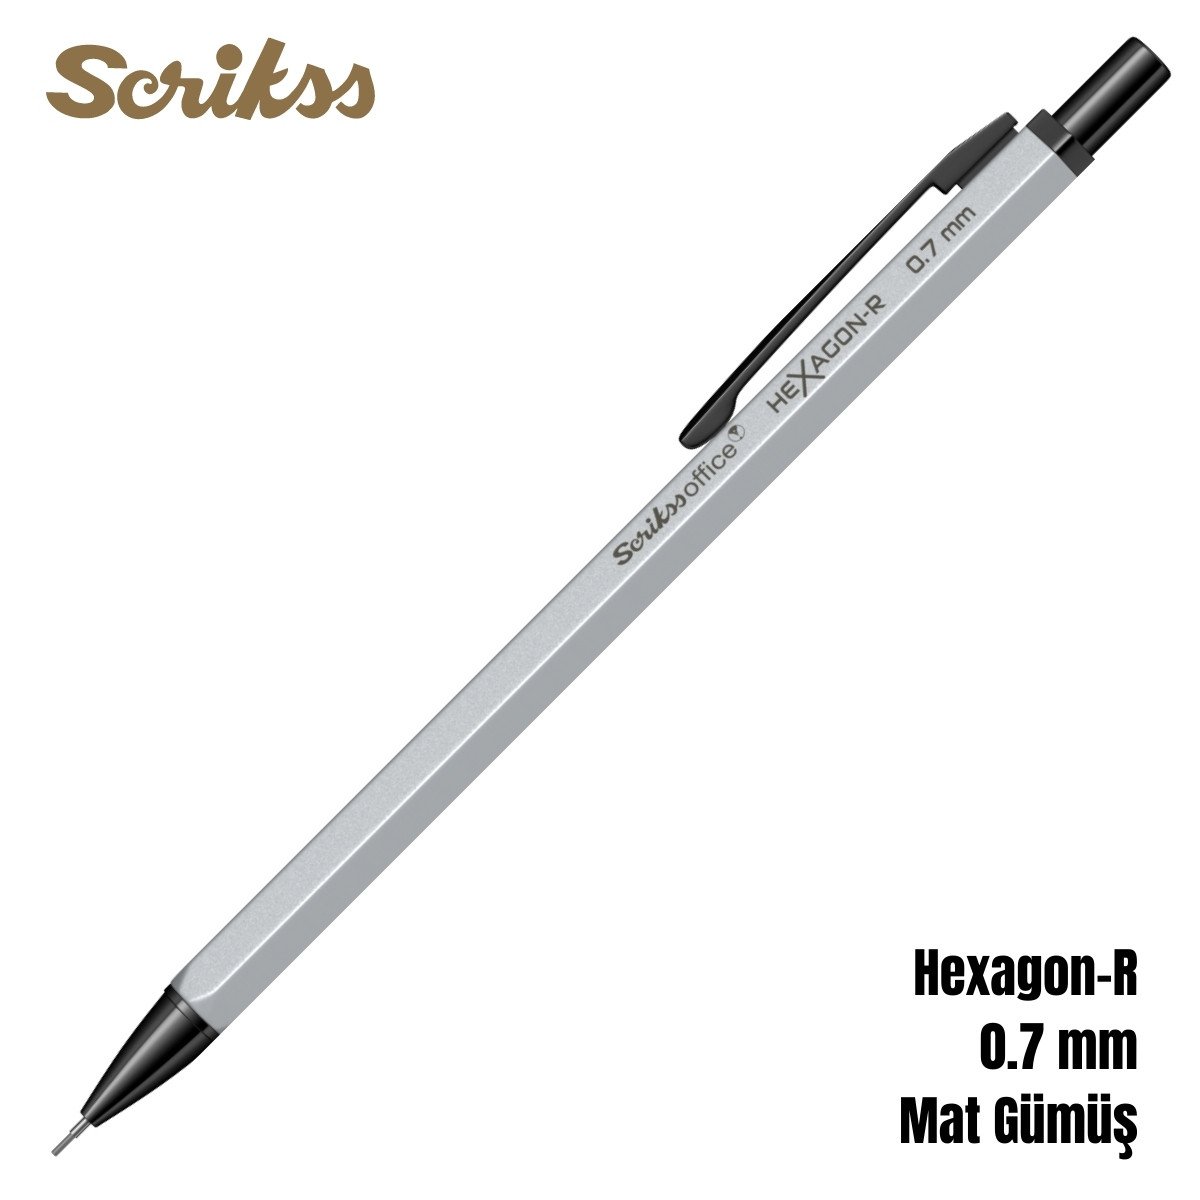 Scrikss Versatil Kalem Hexagon-R 0.7mm Mat Gümüş